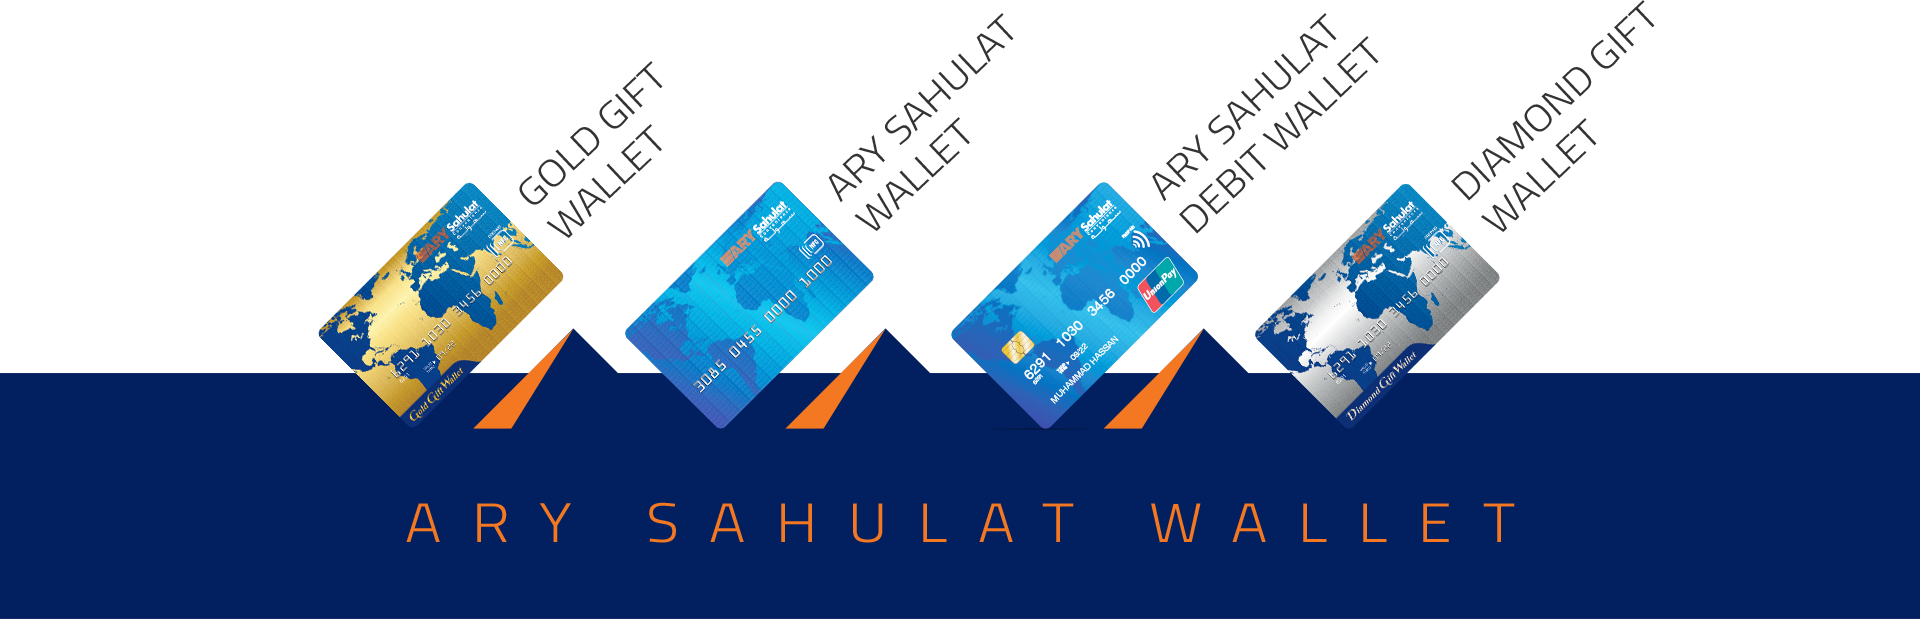 sahulat wallet cards